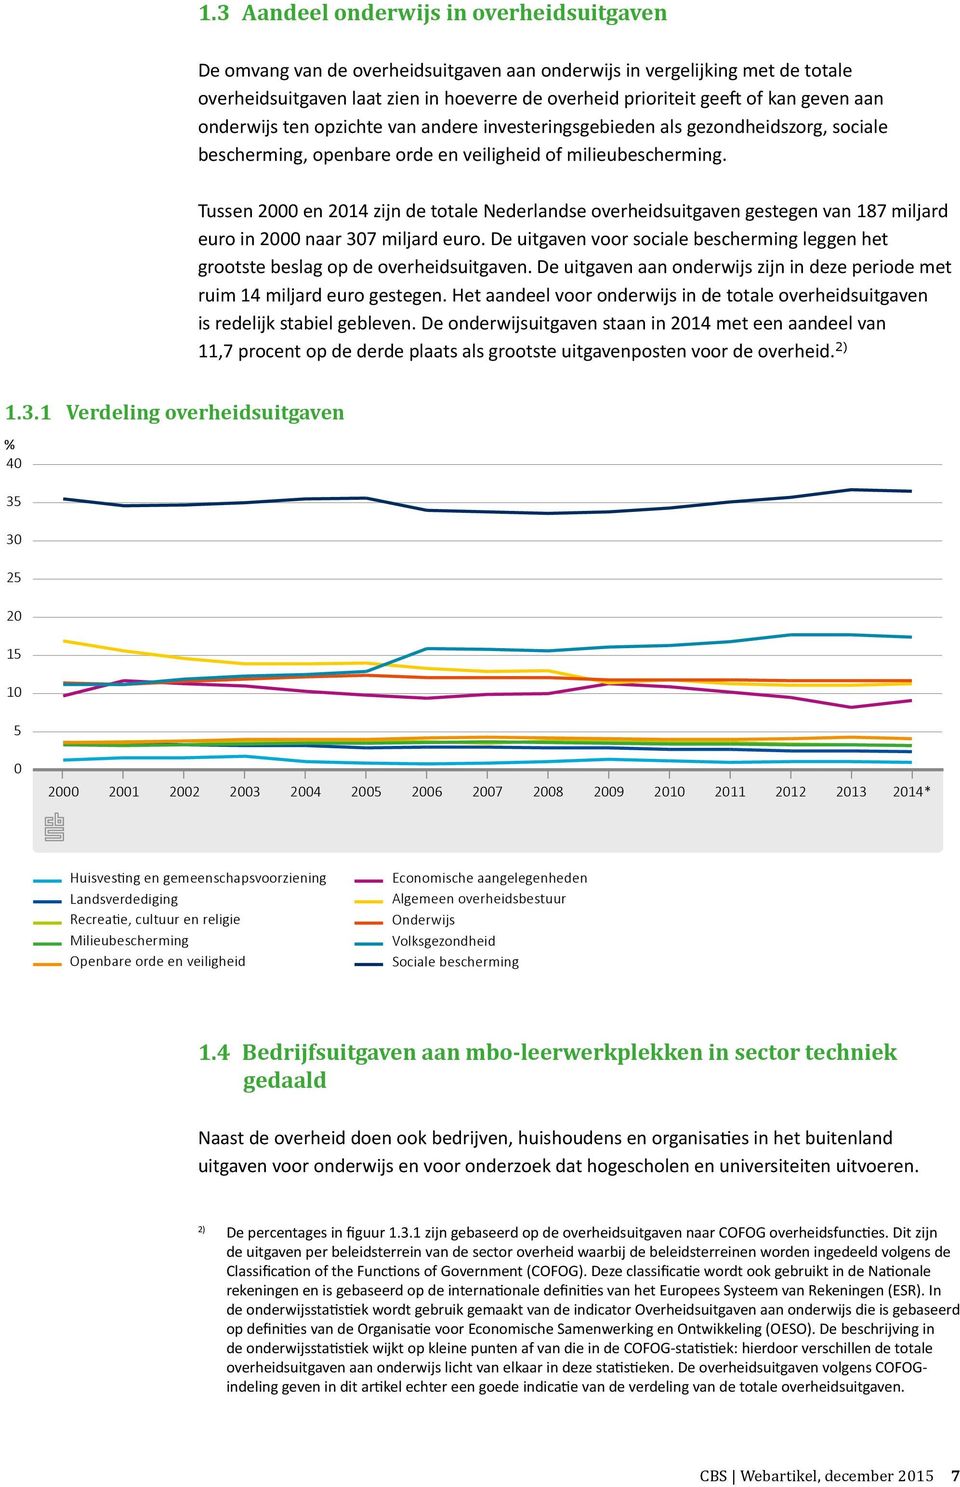 Tussen 2000 en 2014 zijn de totale Nederlandse overheidsuitgaven gestegen van 187 miljard euro in 2000 naar 307 miljard euro.